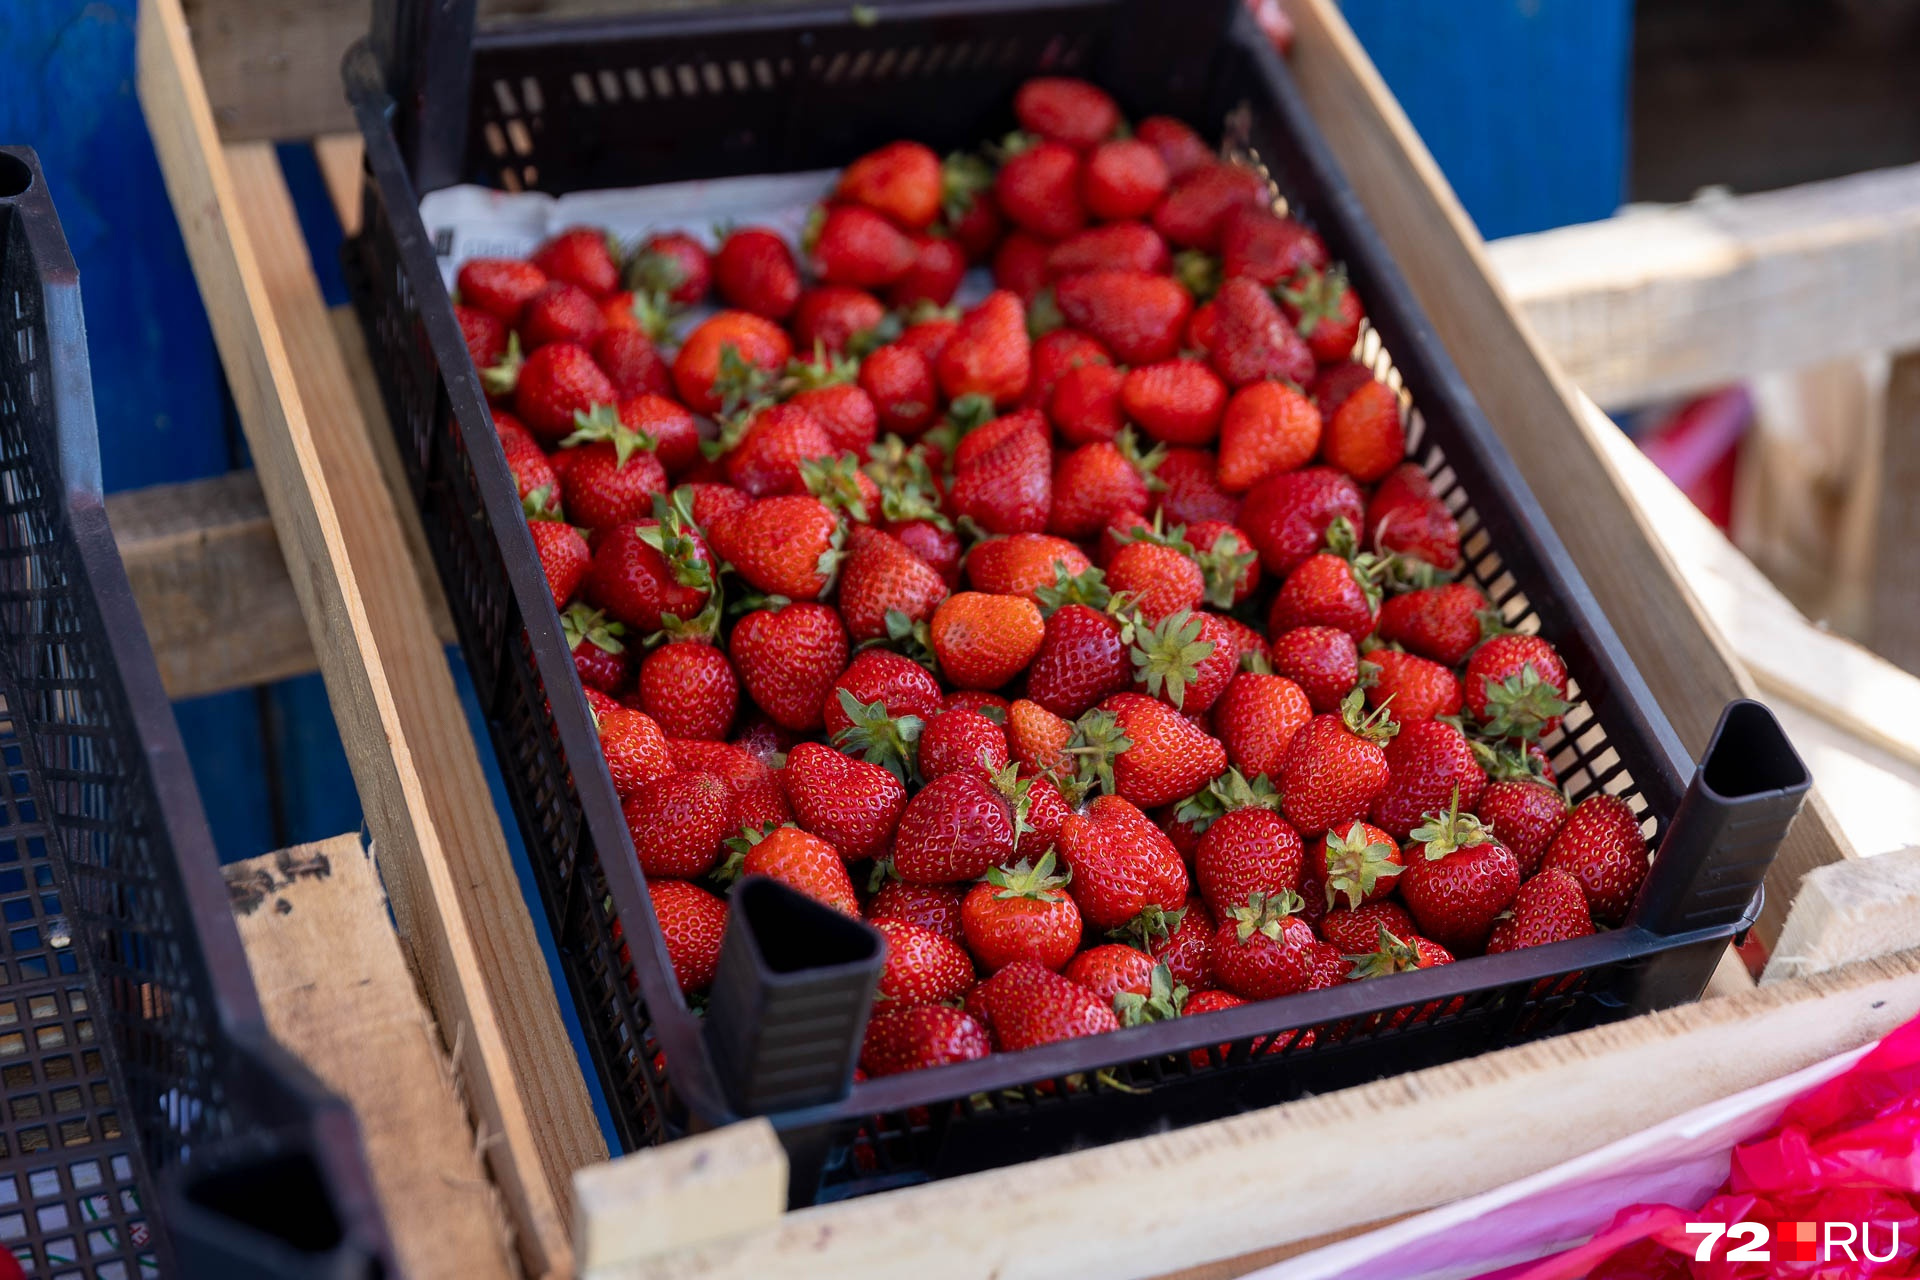 Покупать ли сейчас фрукты и ягоды — дело ваше. Другой вопрос, что нужно хорошо их мыть перед употреблением. А лучше ошпарить кипятком для надежности